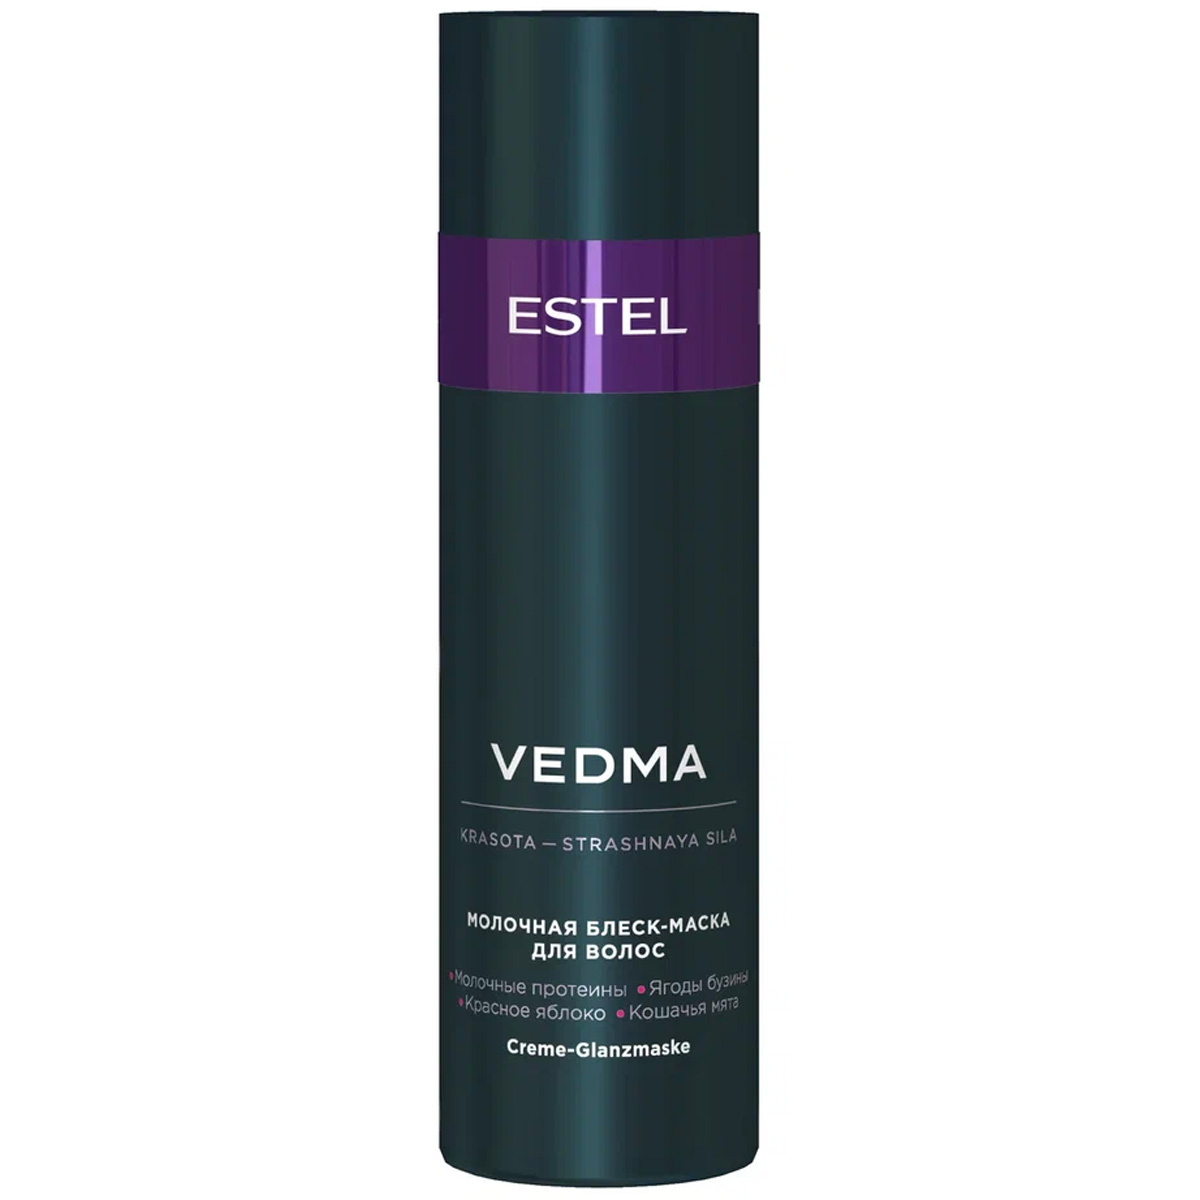 Estel Молочная блеск- маска для волос 200 мл (Estel, Vedma)